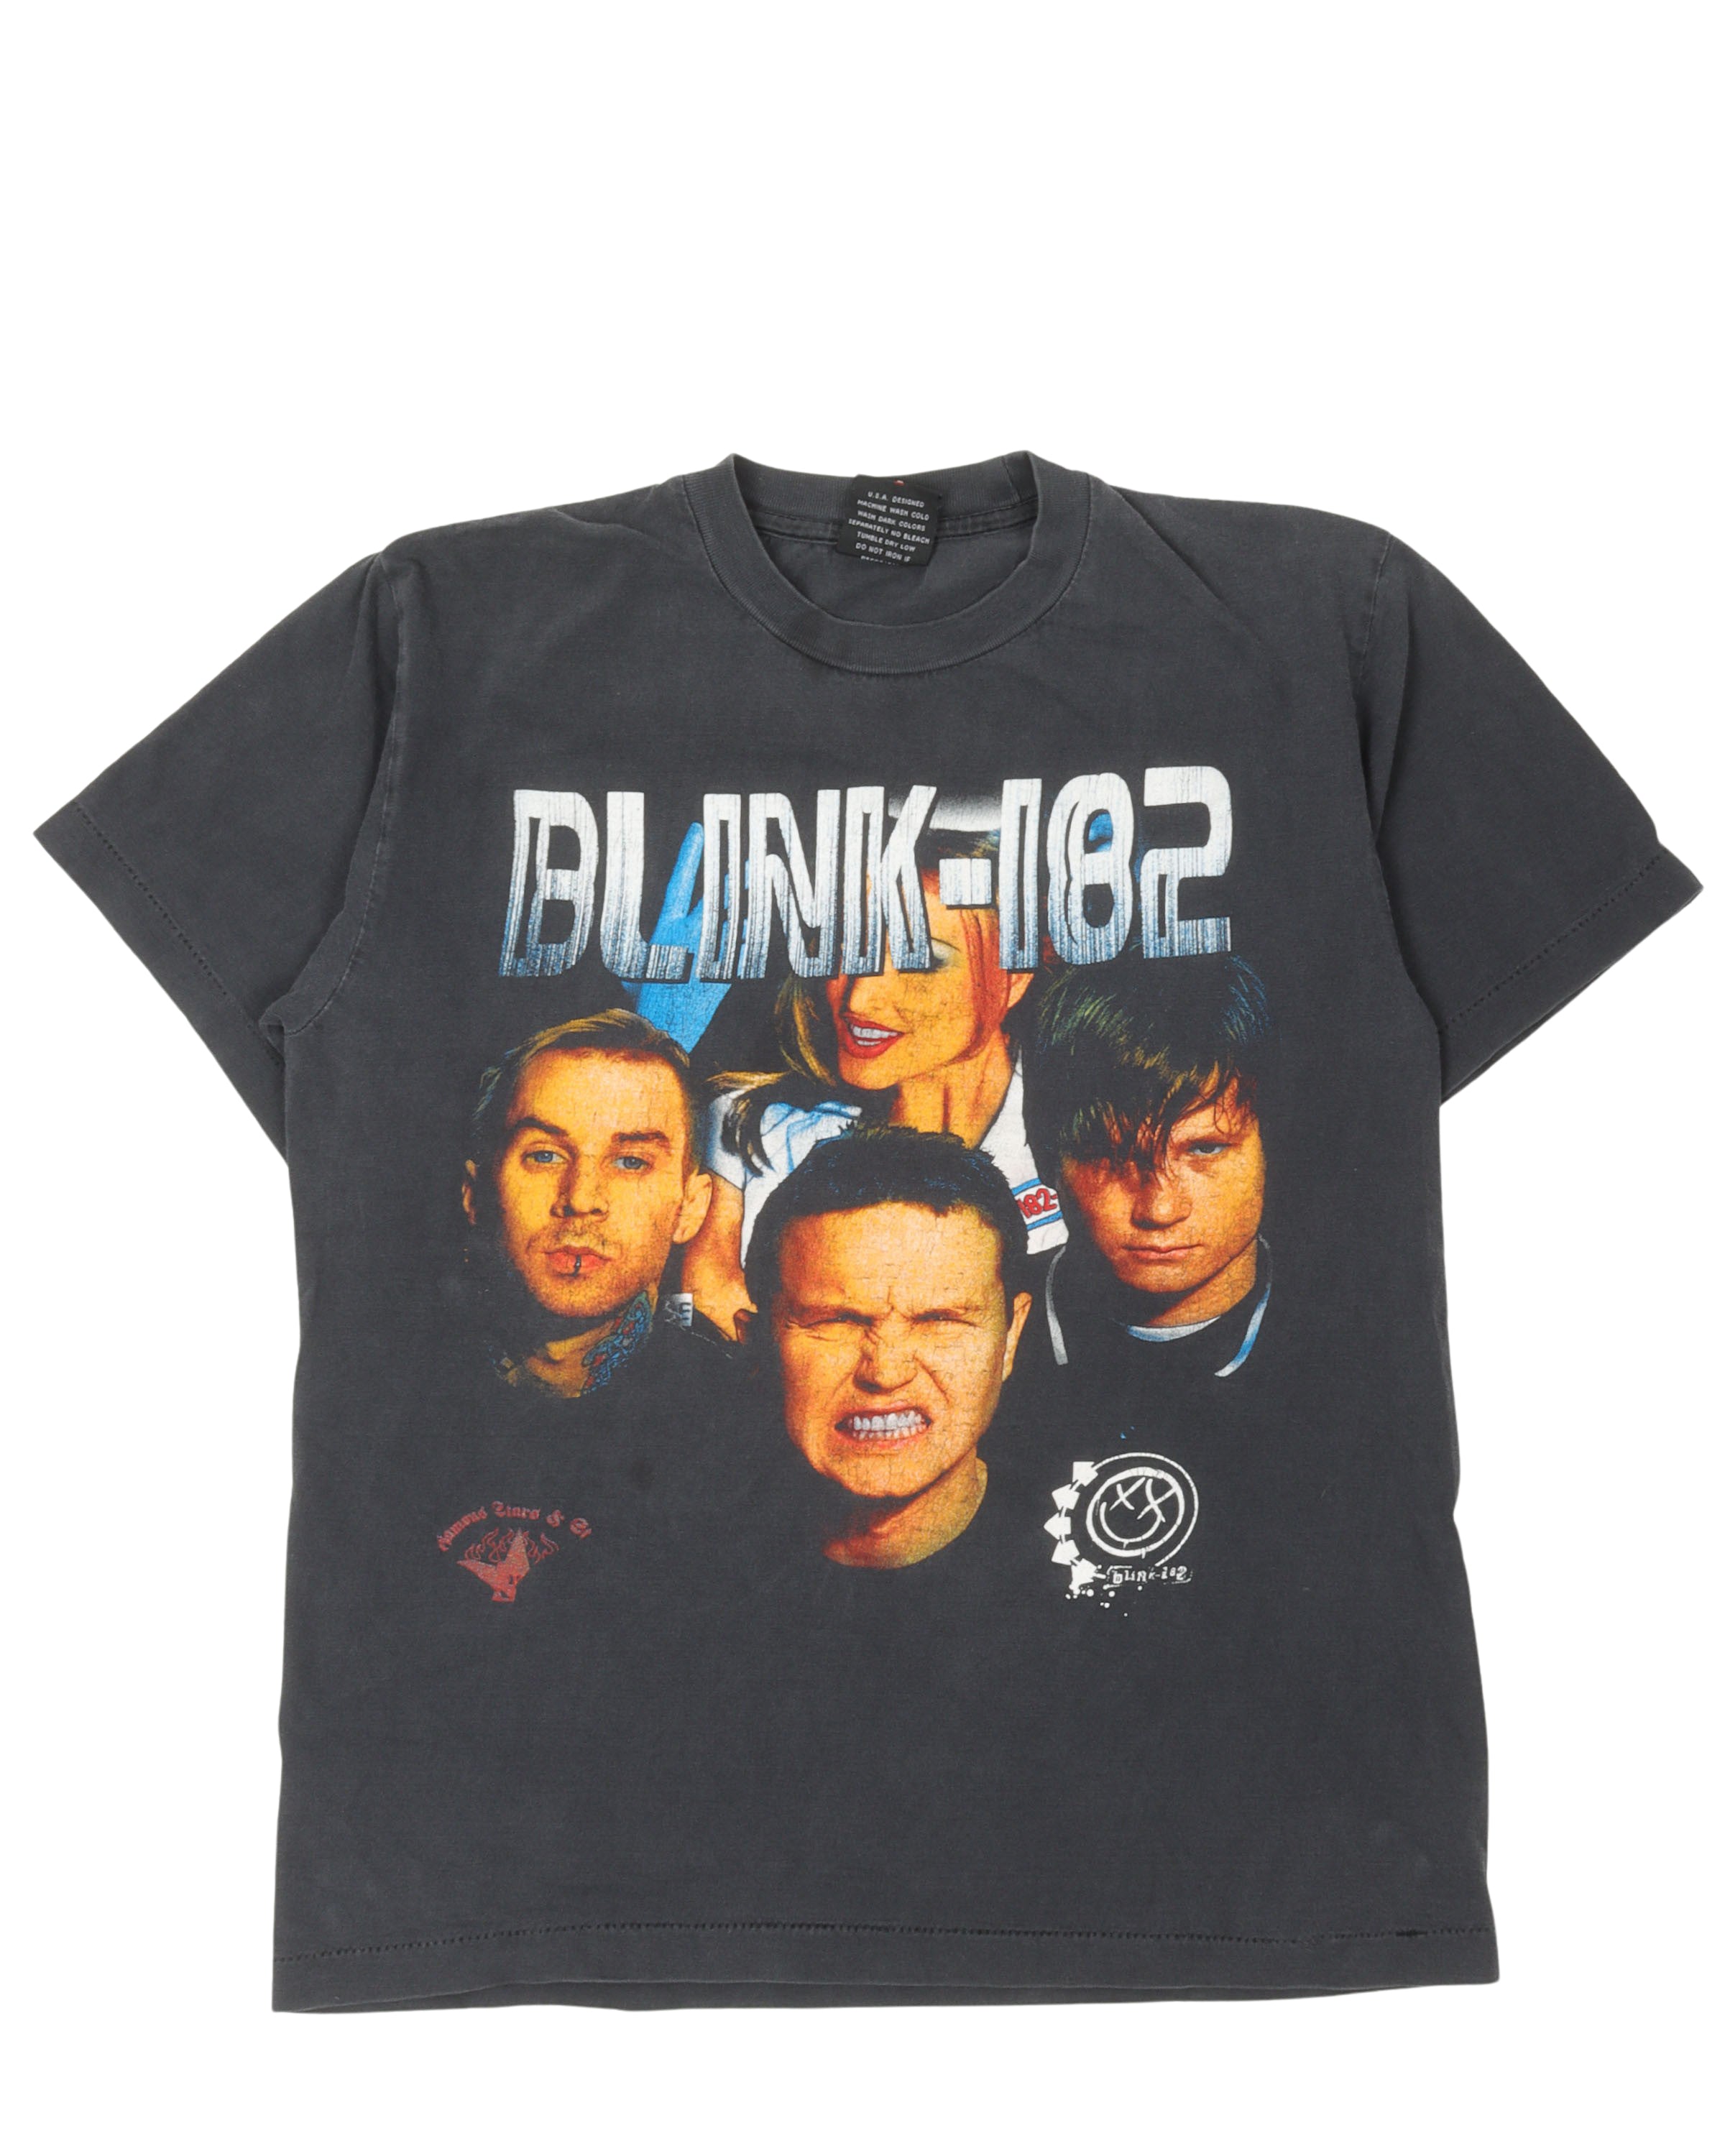 Blink 182 Age Again T-Shirt